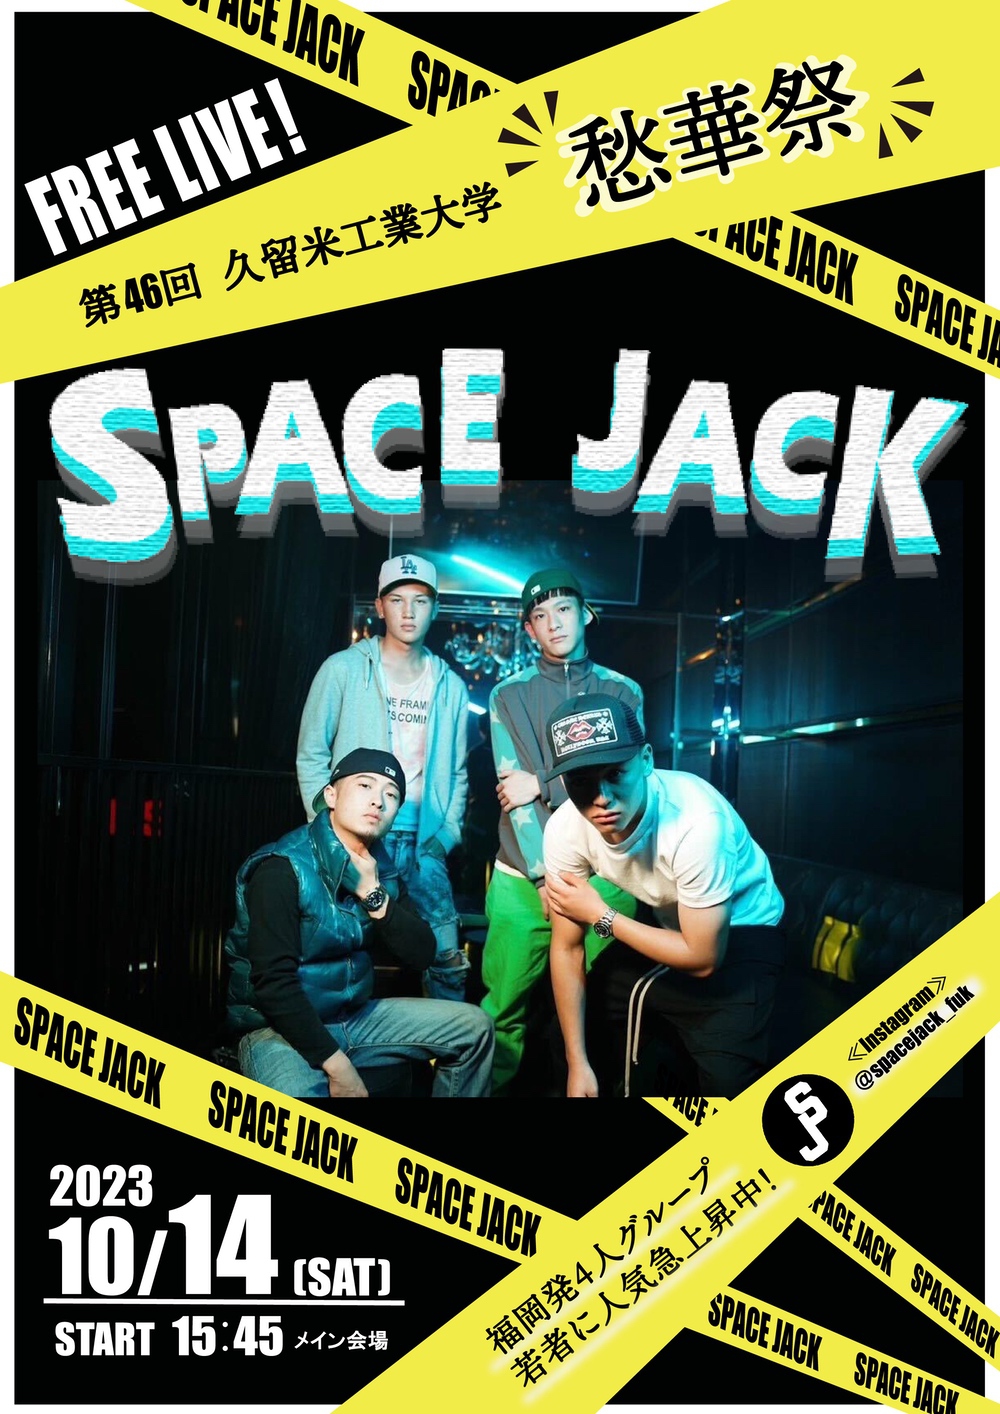 「久留米工業大学 第46回 愁華祭」Space Jack SPECIAL FREE LIVE